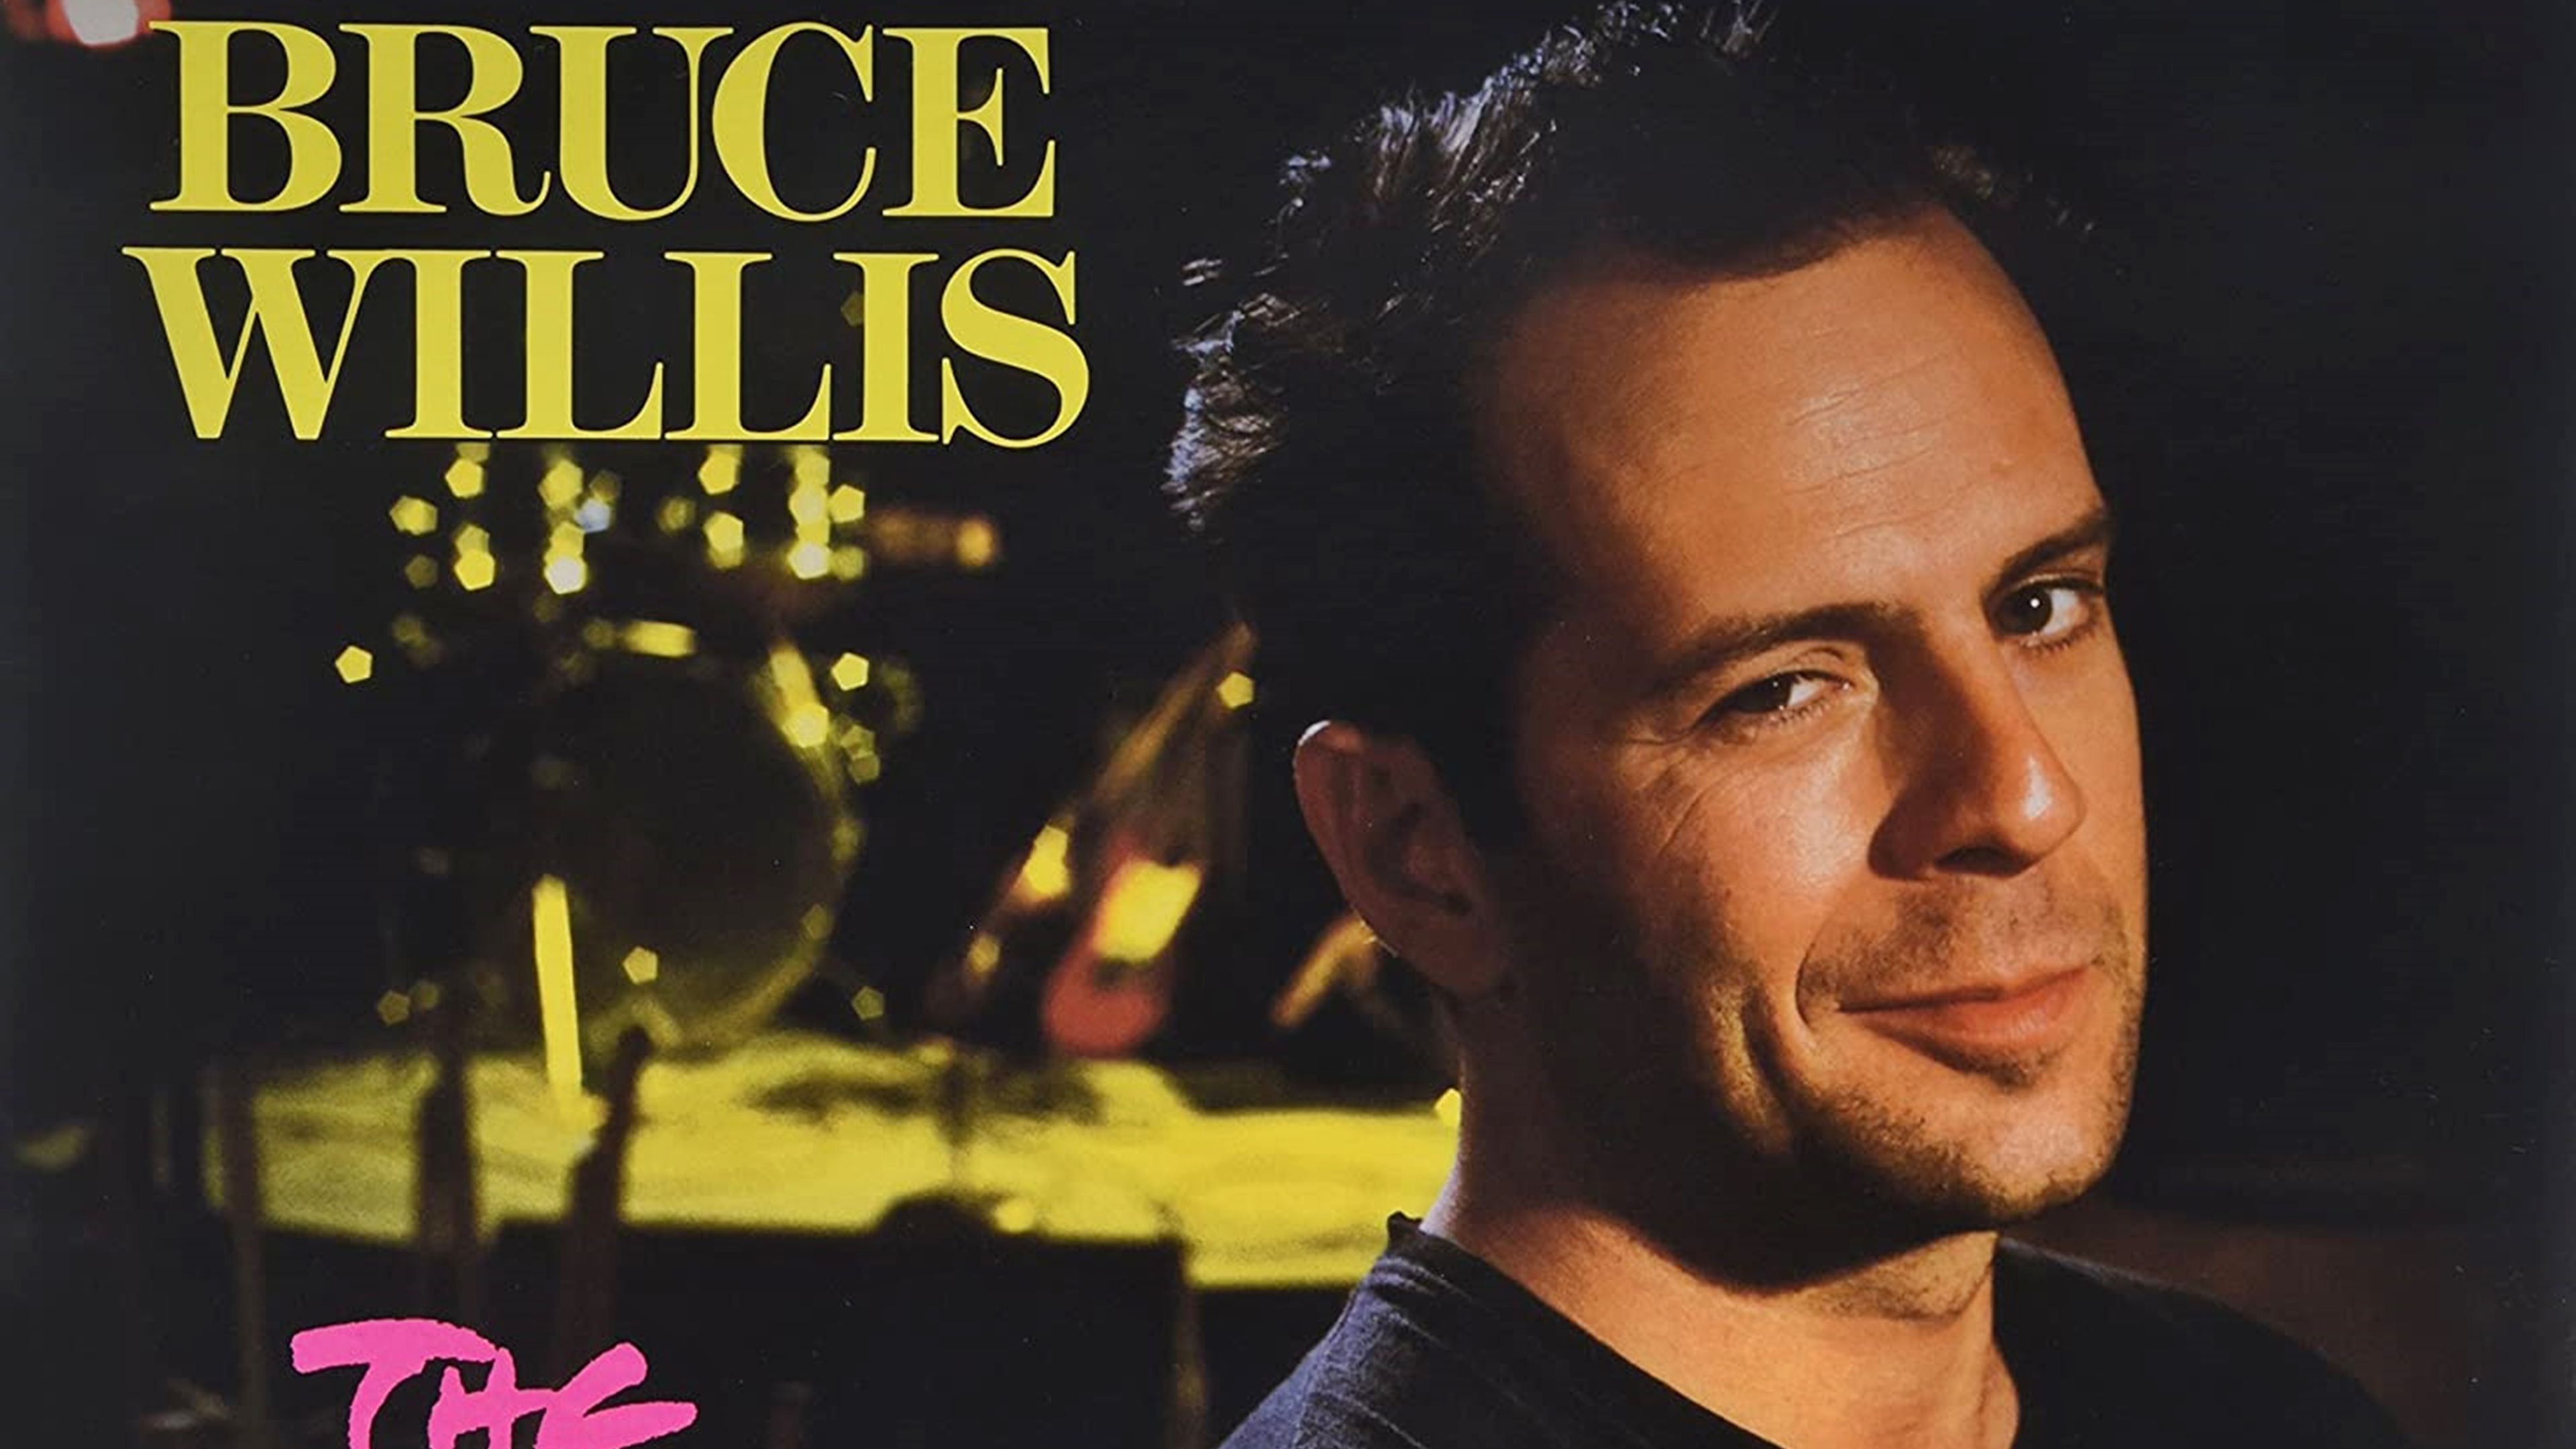 Bruce Willis as Singer